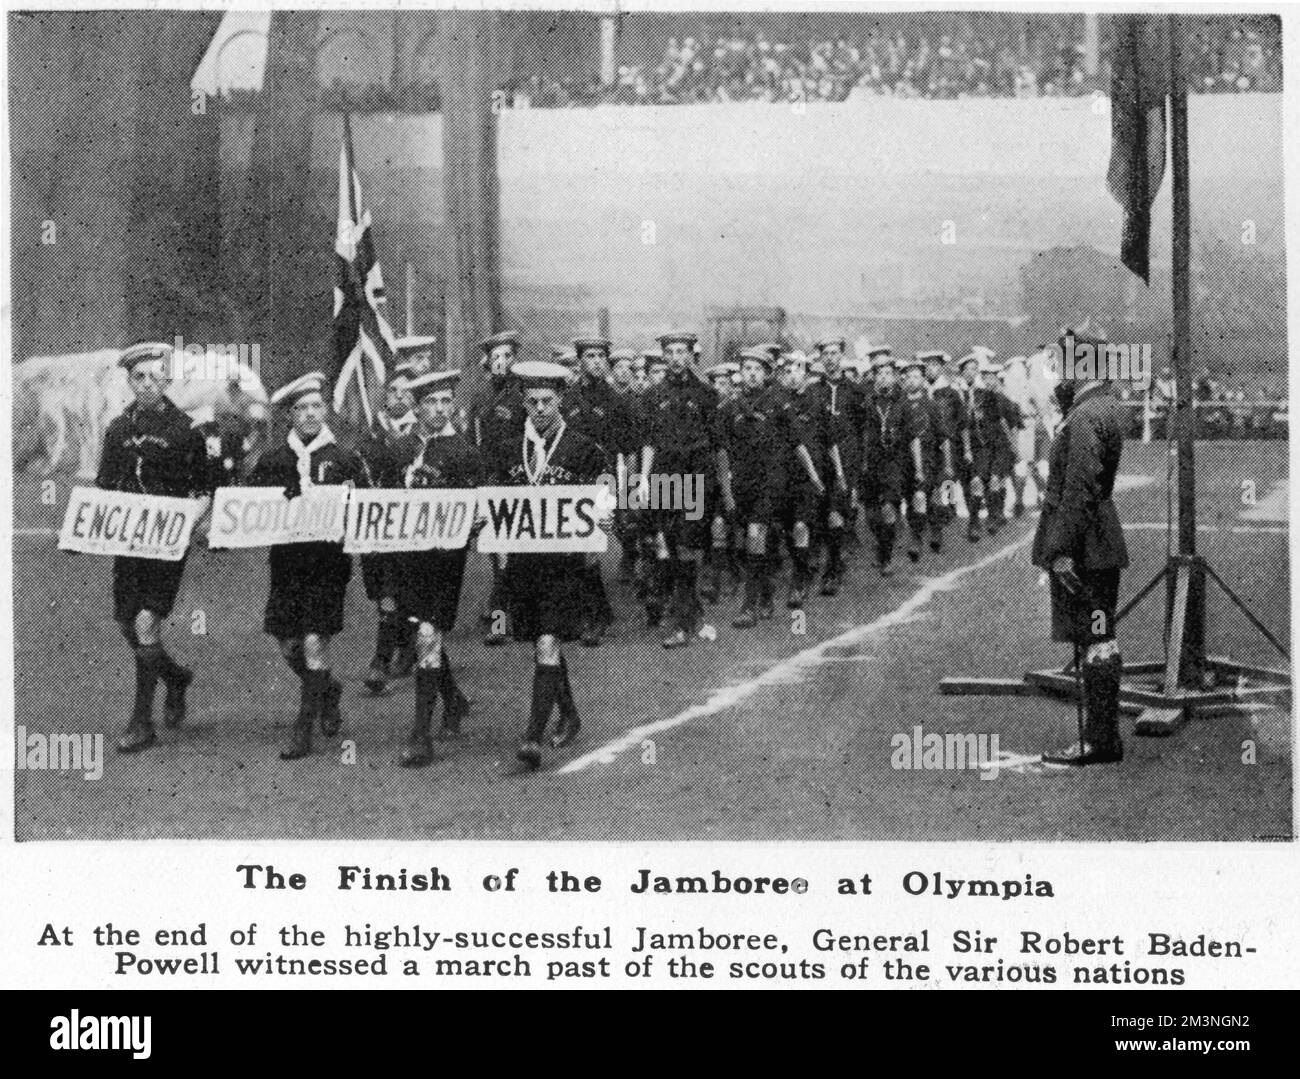 Sea Scout dalle Isole Britanniche marciano il Capo Scout, il Generale Sir Robert Baden-Powell, parte di una parata con gli scout delle molte nazioni che hanno partecipato al primo Jamboree Mondiale, con sede principalmente ad Olympia, Londra nell'estate del 1920. Luglio - Agosto 1920 Foto Stock